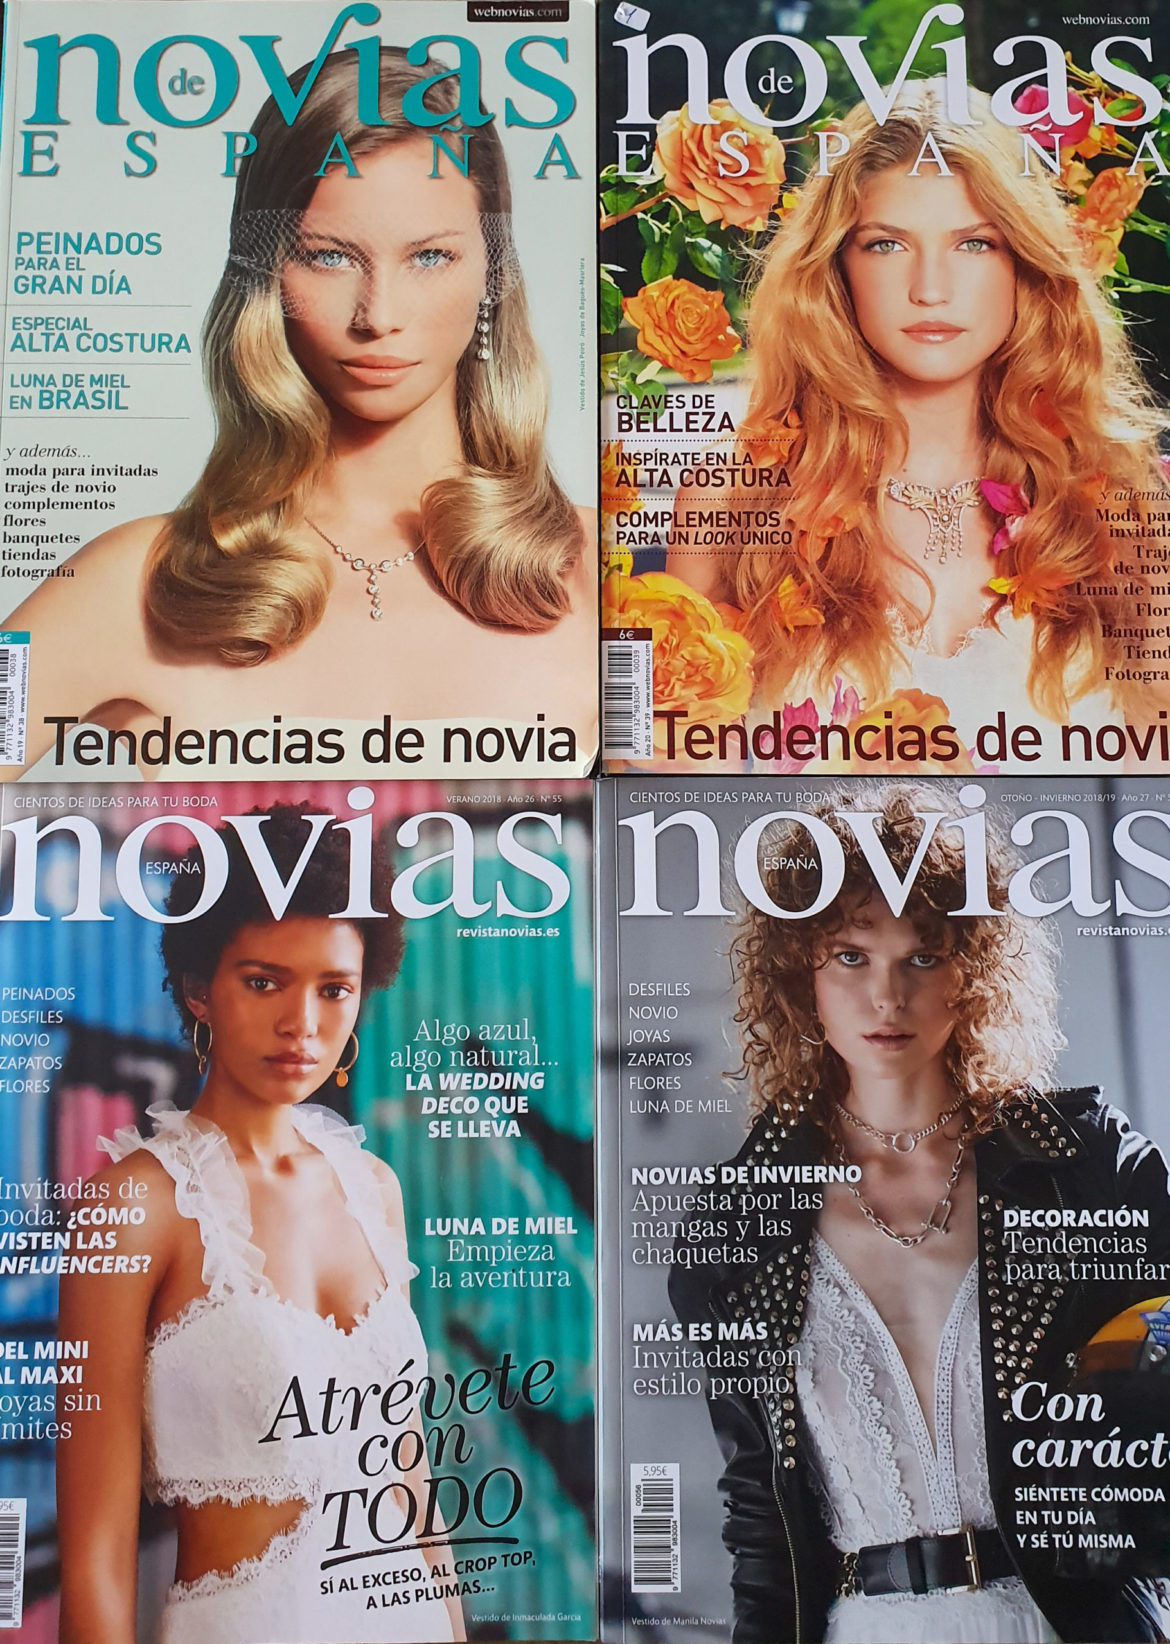 Revista Novias España. Así han cambiado las ideas para bodas en los últimos 10 años